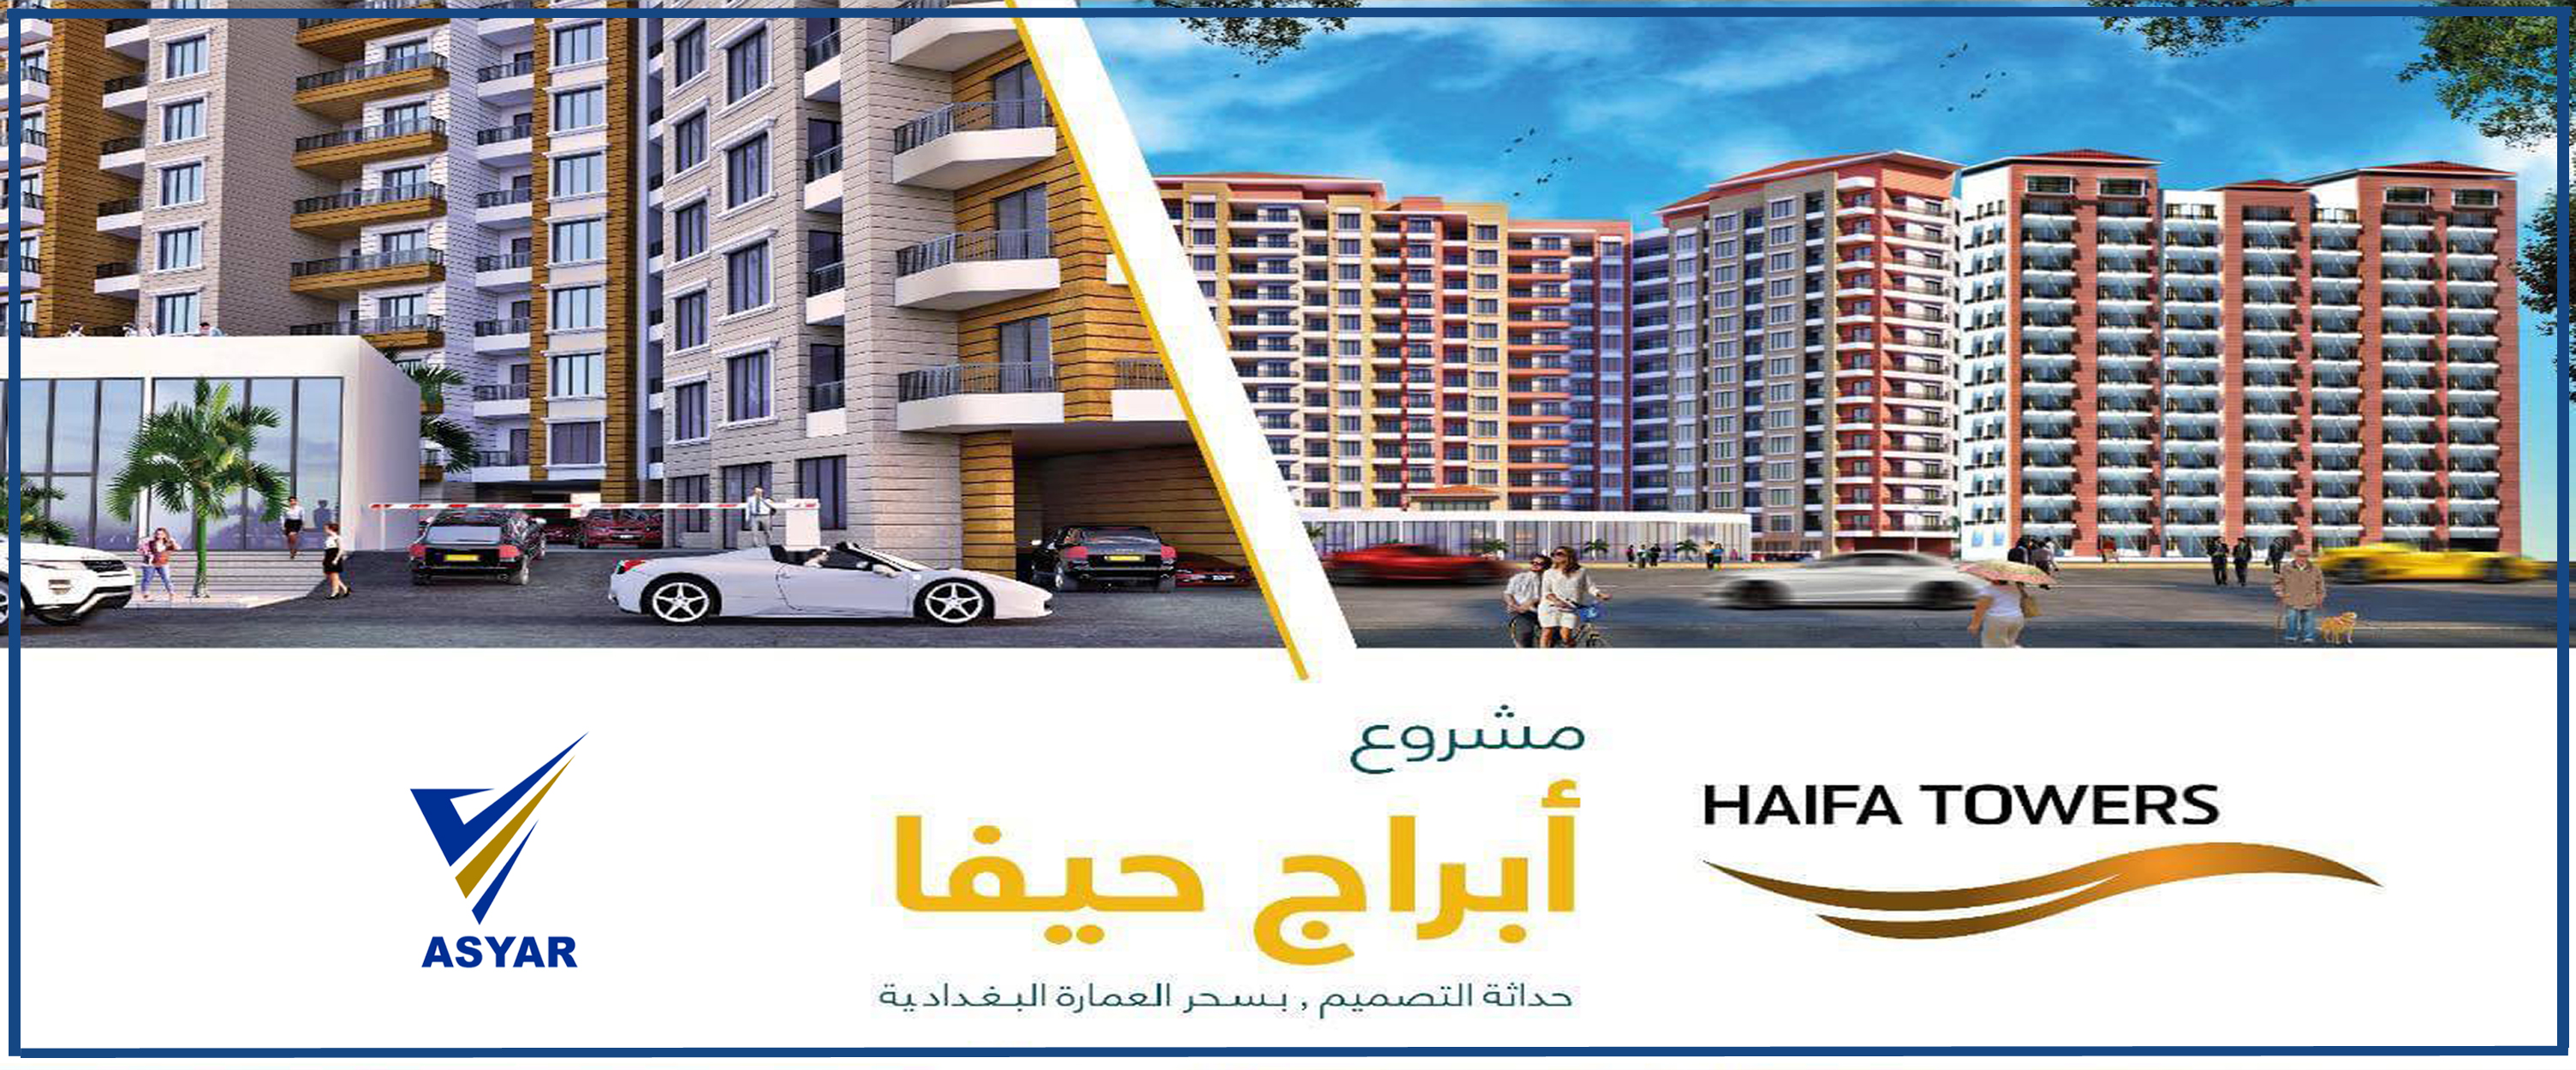 Haifa City consists of (350) housing